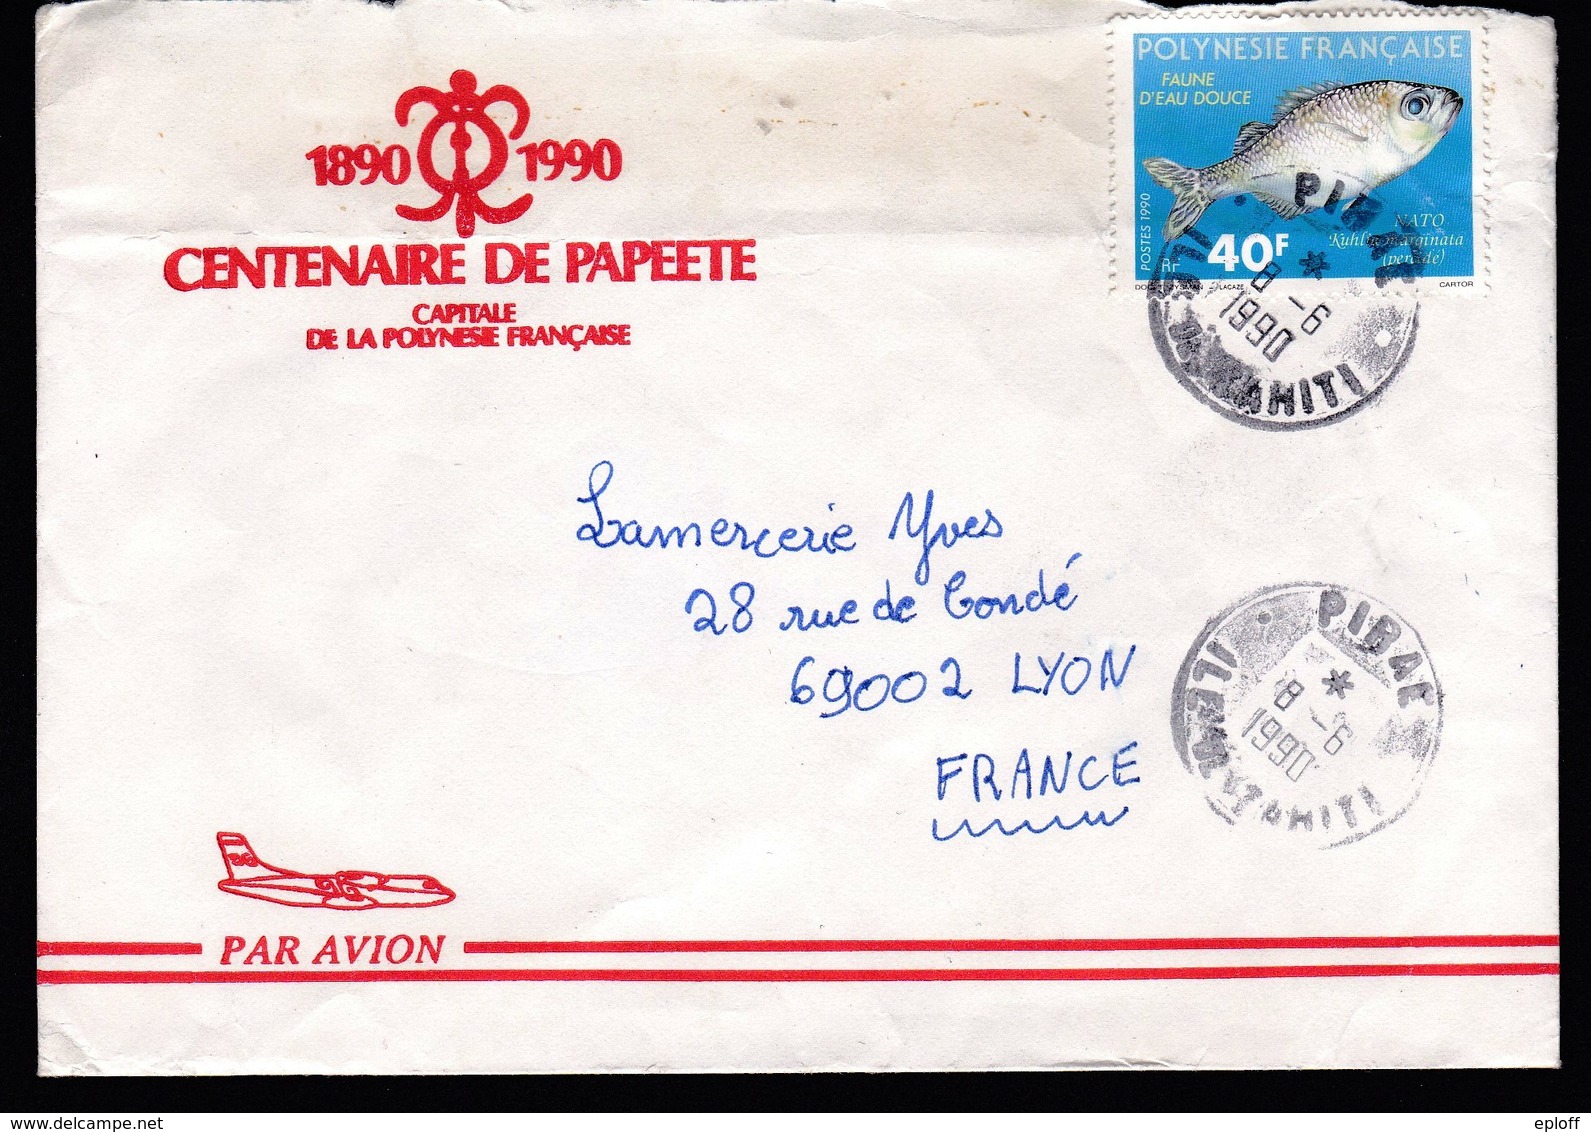 POLYNESIE FRANCAISE 1990    Enveloppe Centenaire De Papeete 1890 1990 Sur Faune D'eau Douce : Kuhlia Marginata - Used Stamps